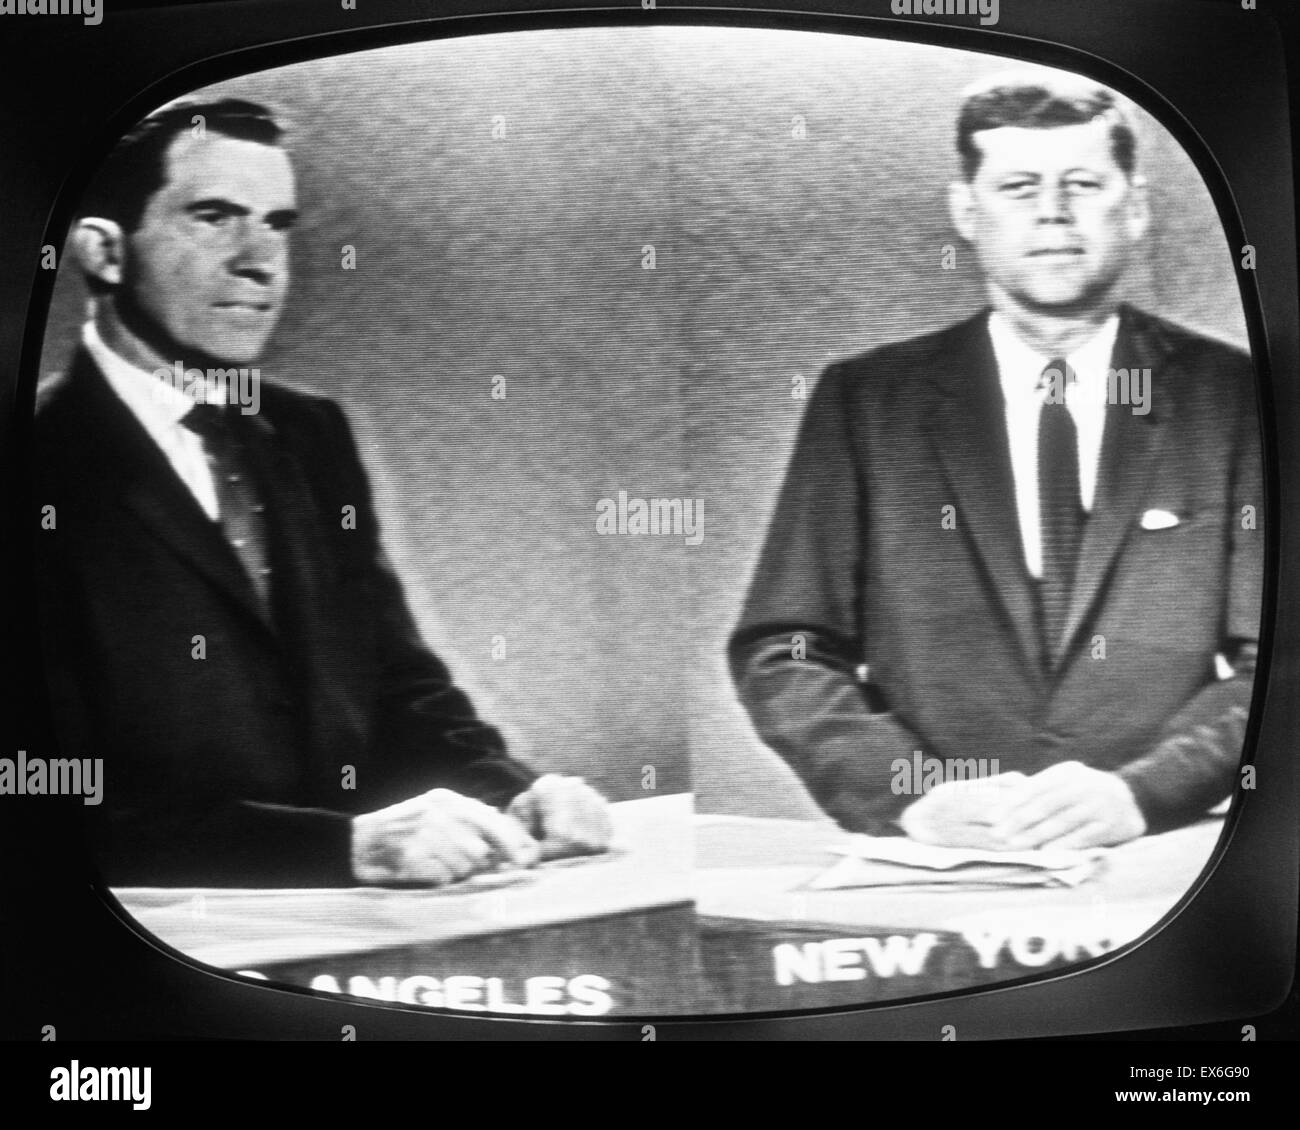 John F. Kennedy et Richard Nixon, participer à une émission télévisée américaine, 1960 débat présidentiel. Banque D'Images